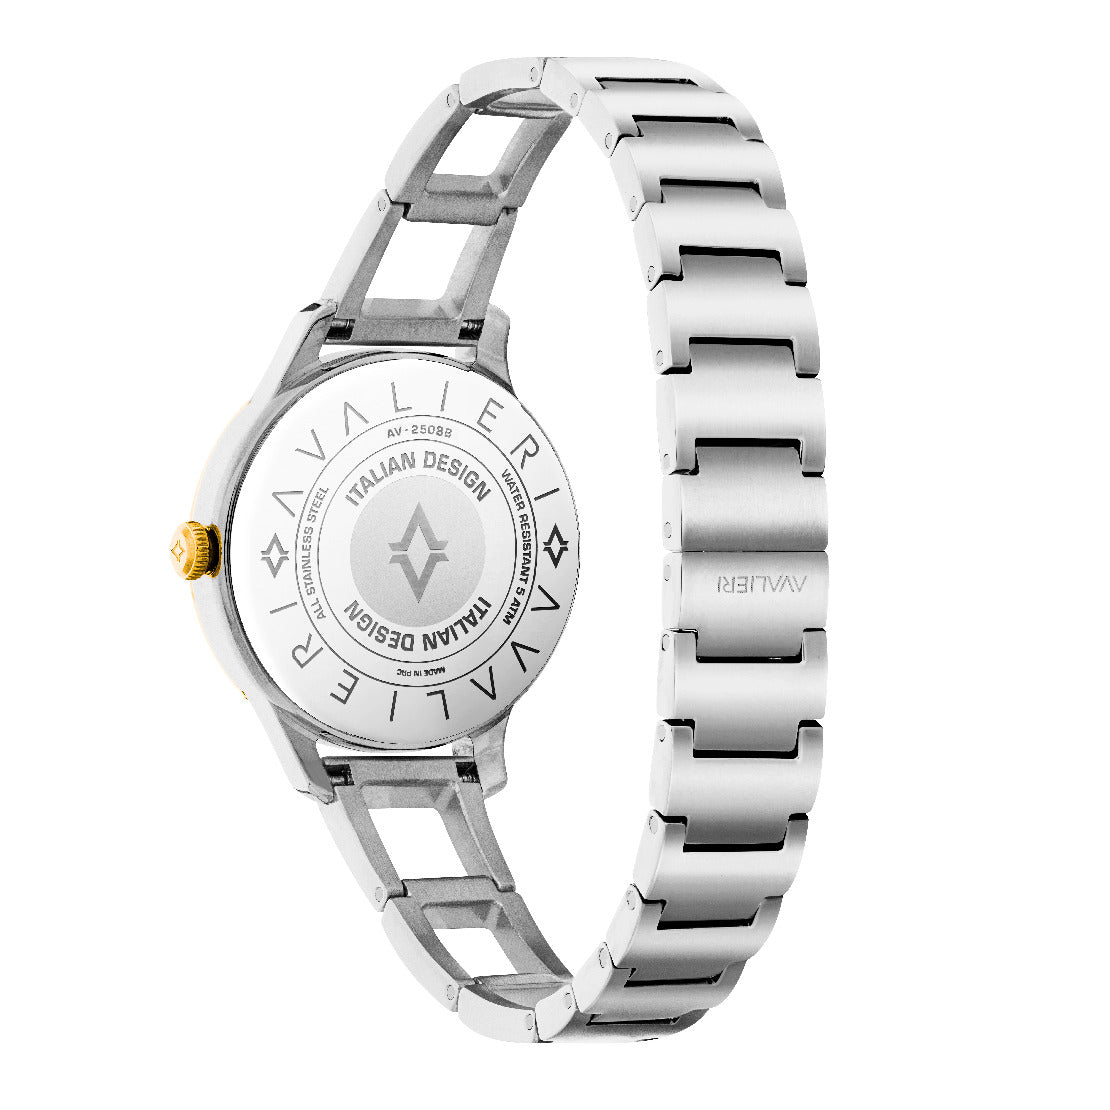 Avalieri Women's Quartz Watch White Dial - AV-2503B